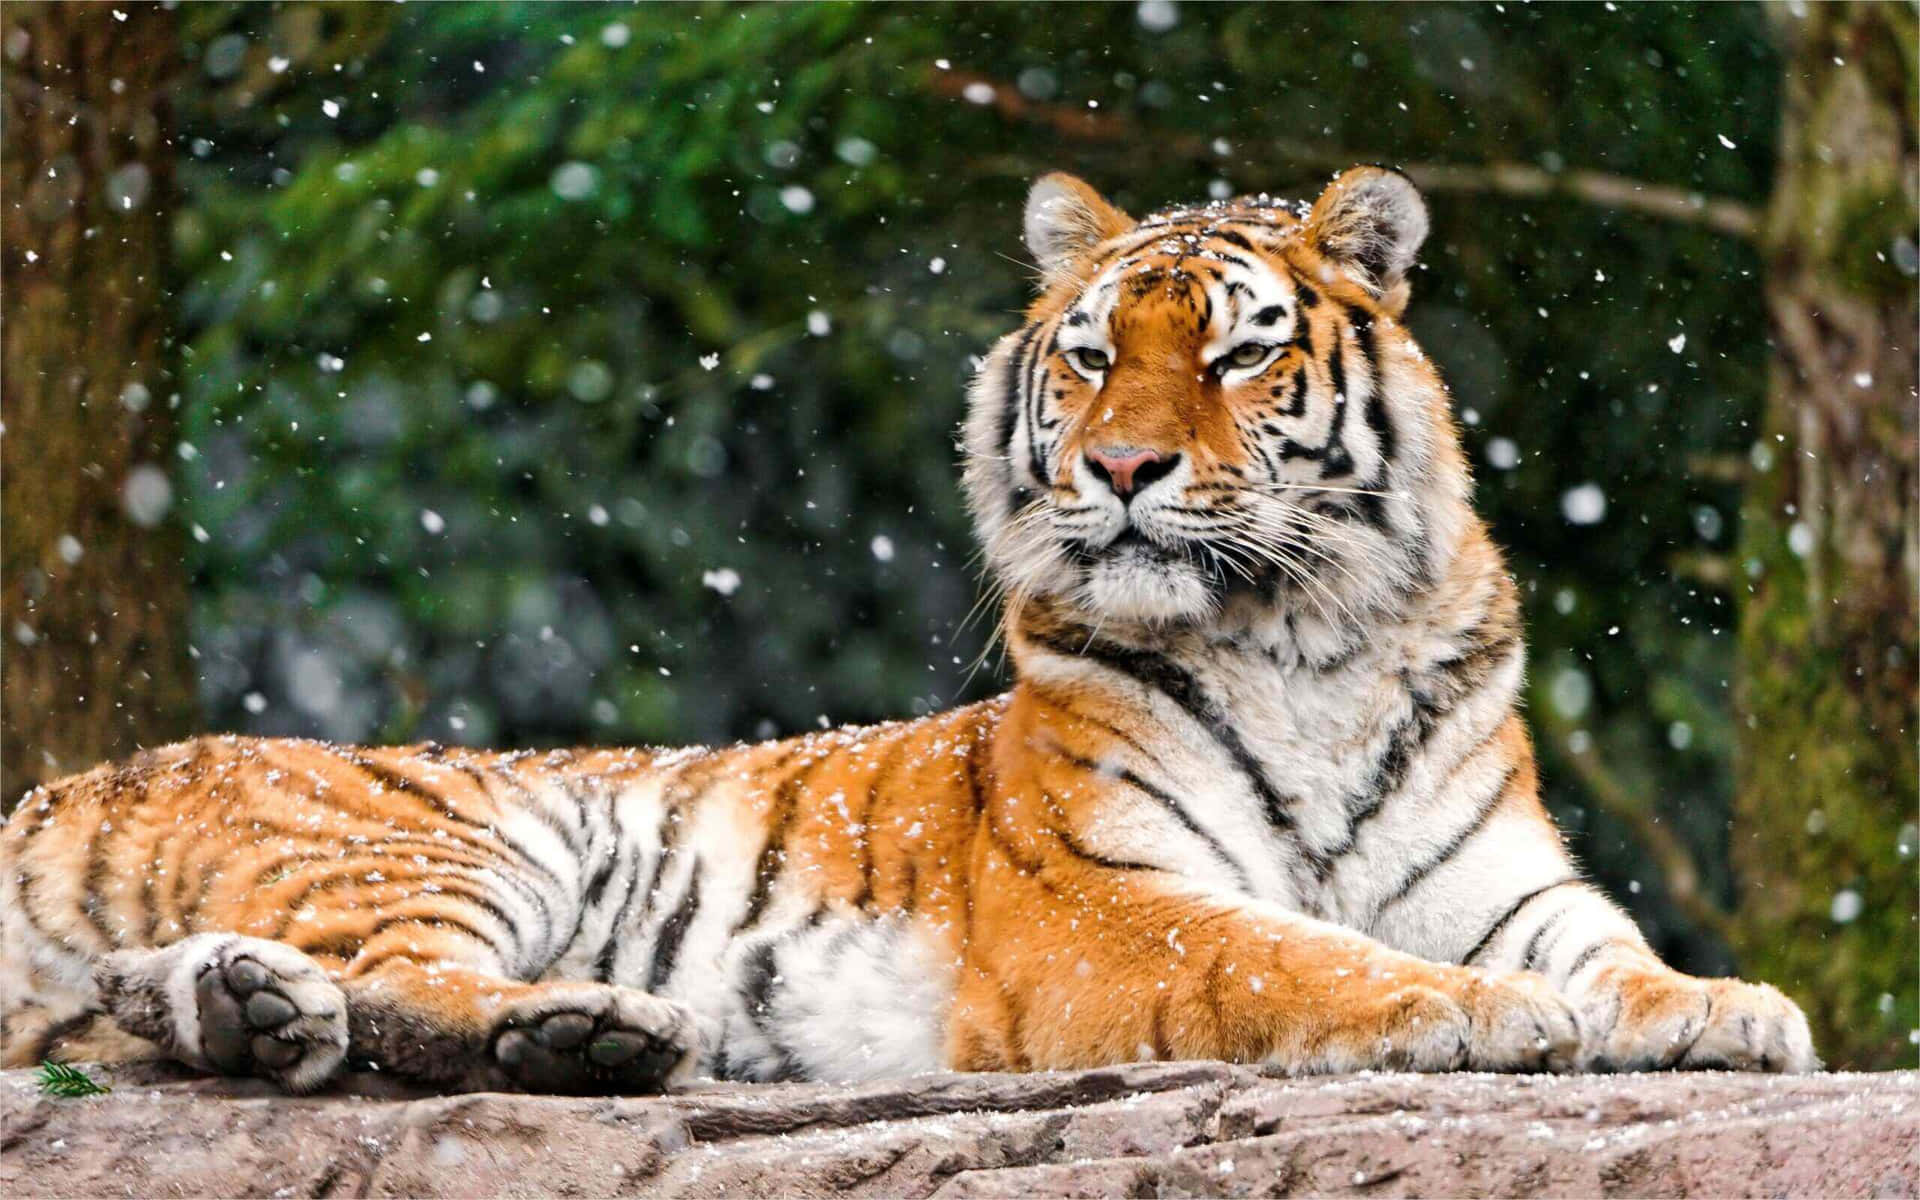 Siberian Tigerin Snowfall.jpg Wallpaper